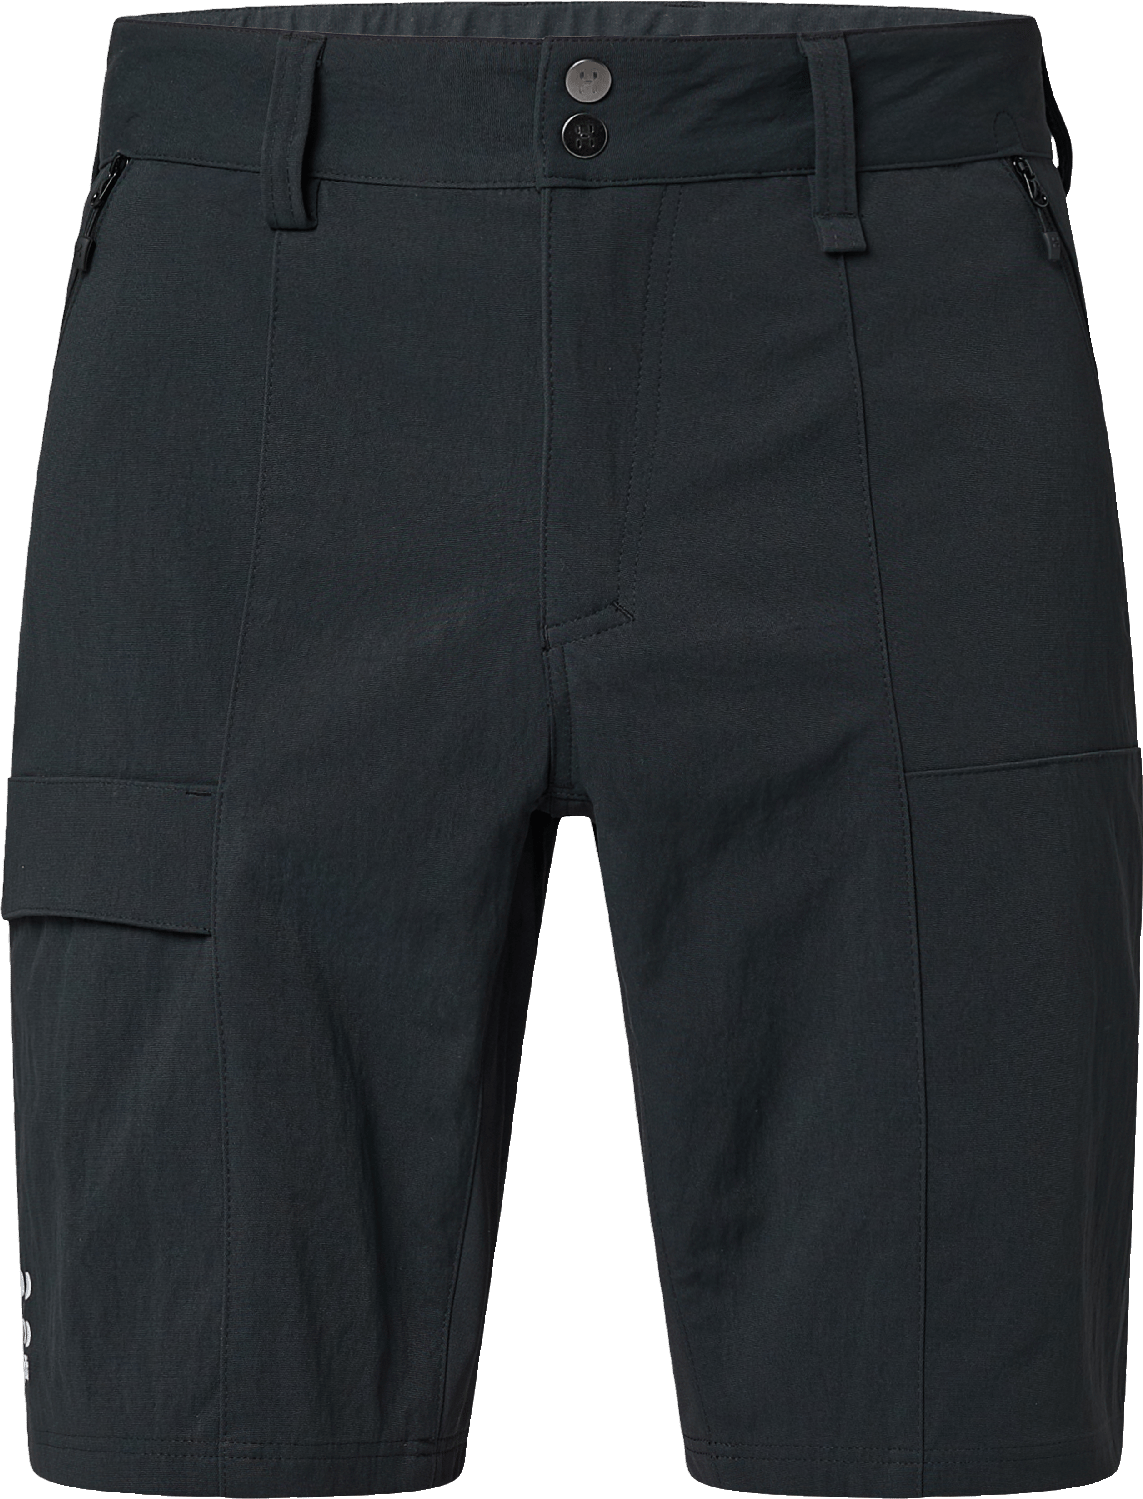 Haglöfs Men's Mid Standard Shorts True Black